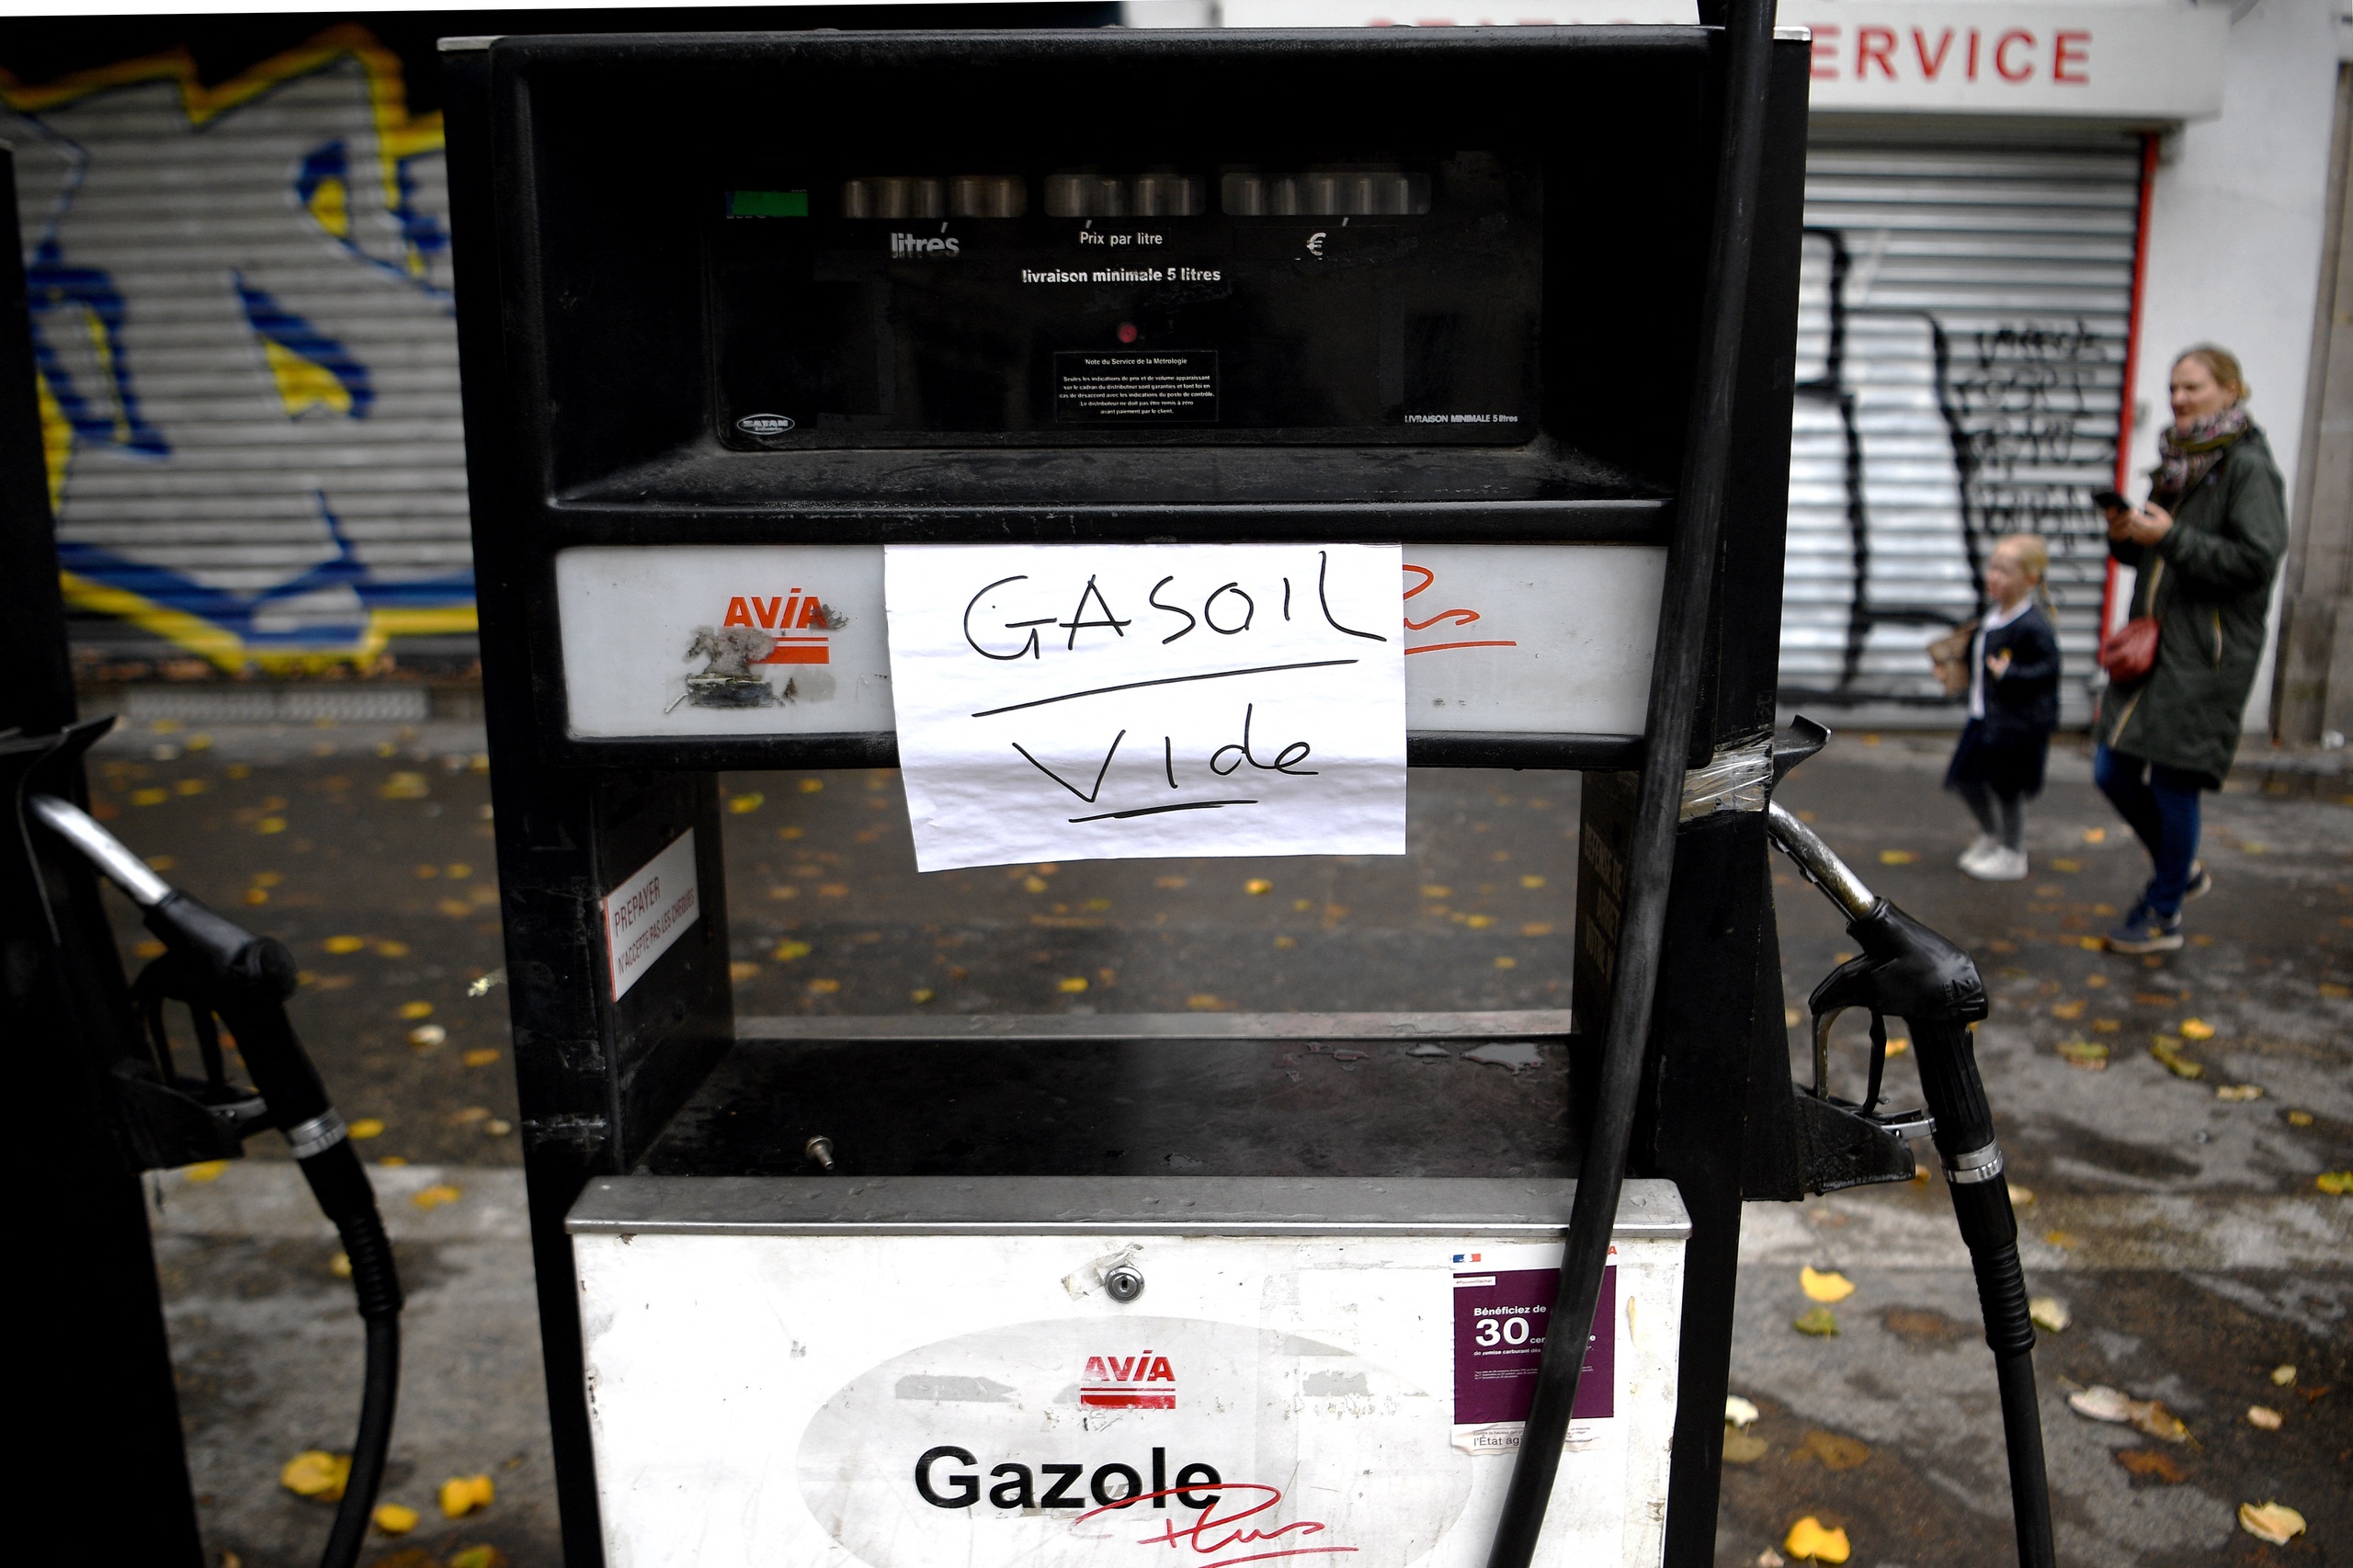 Ongeveer 30 procent van de tankstations in Frankrijk heeft problemen met de levering van een of meerdere brandstoffen. "Dat zijn er te veel", zei de Franse premier. De angst bestaat dat de problemen bij de tankstations de toch al moeizaam draaiende Franse economie verder zullen schaden.